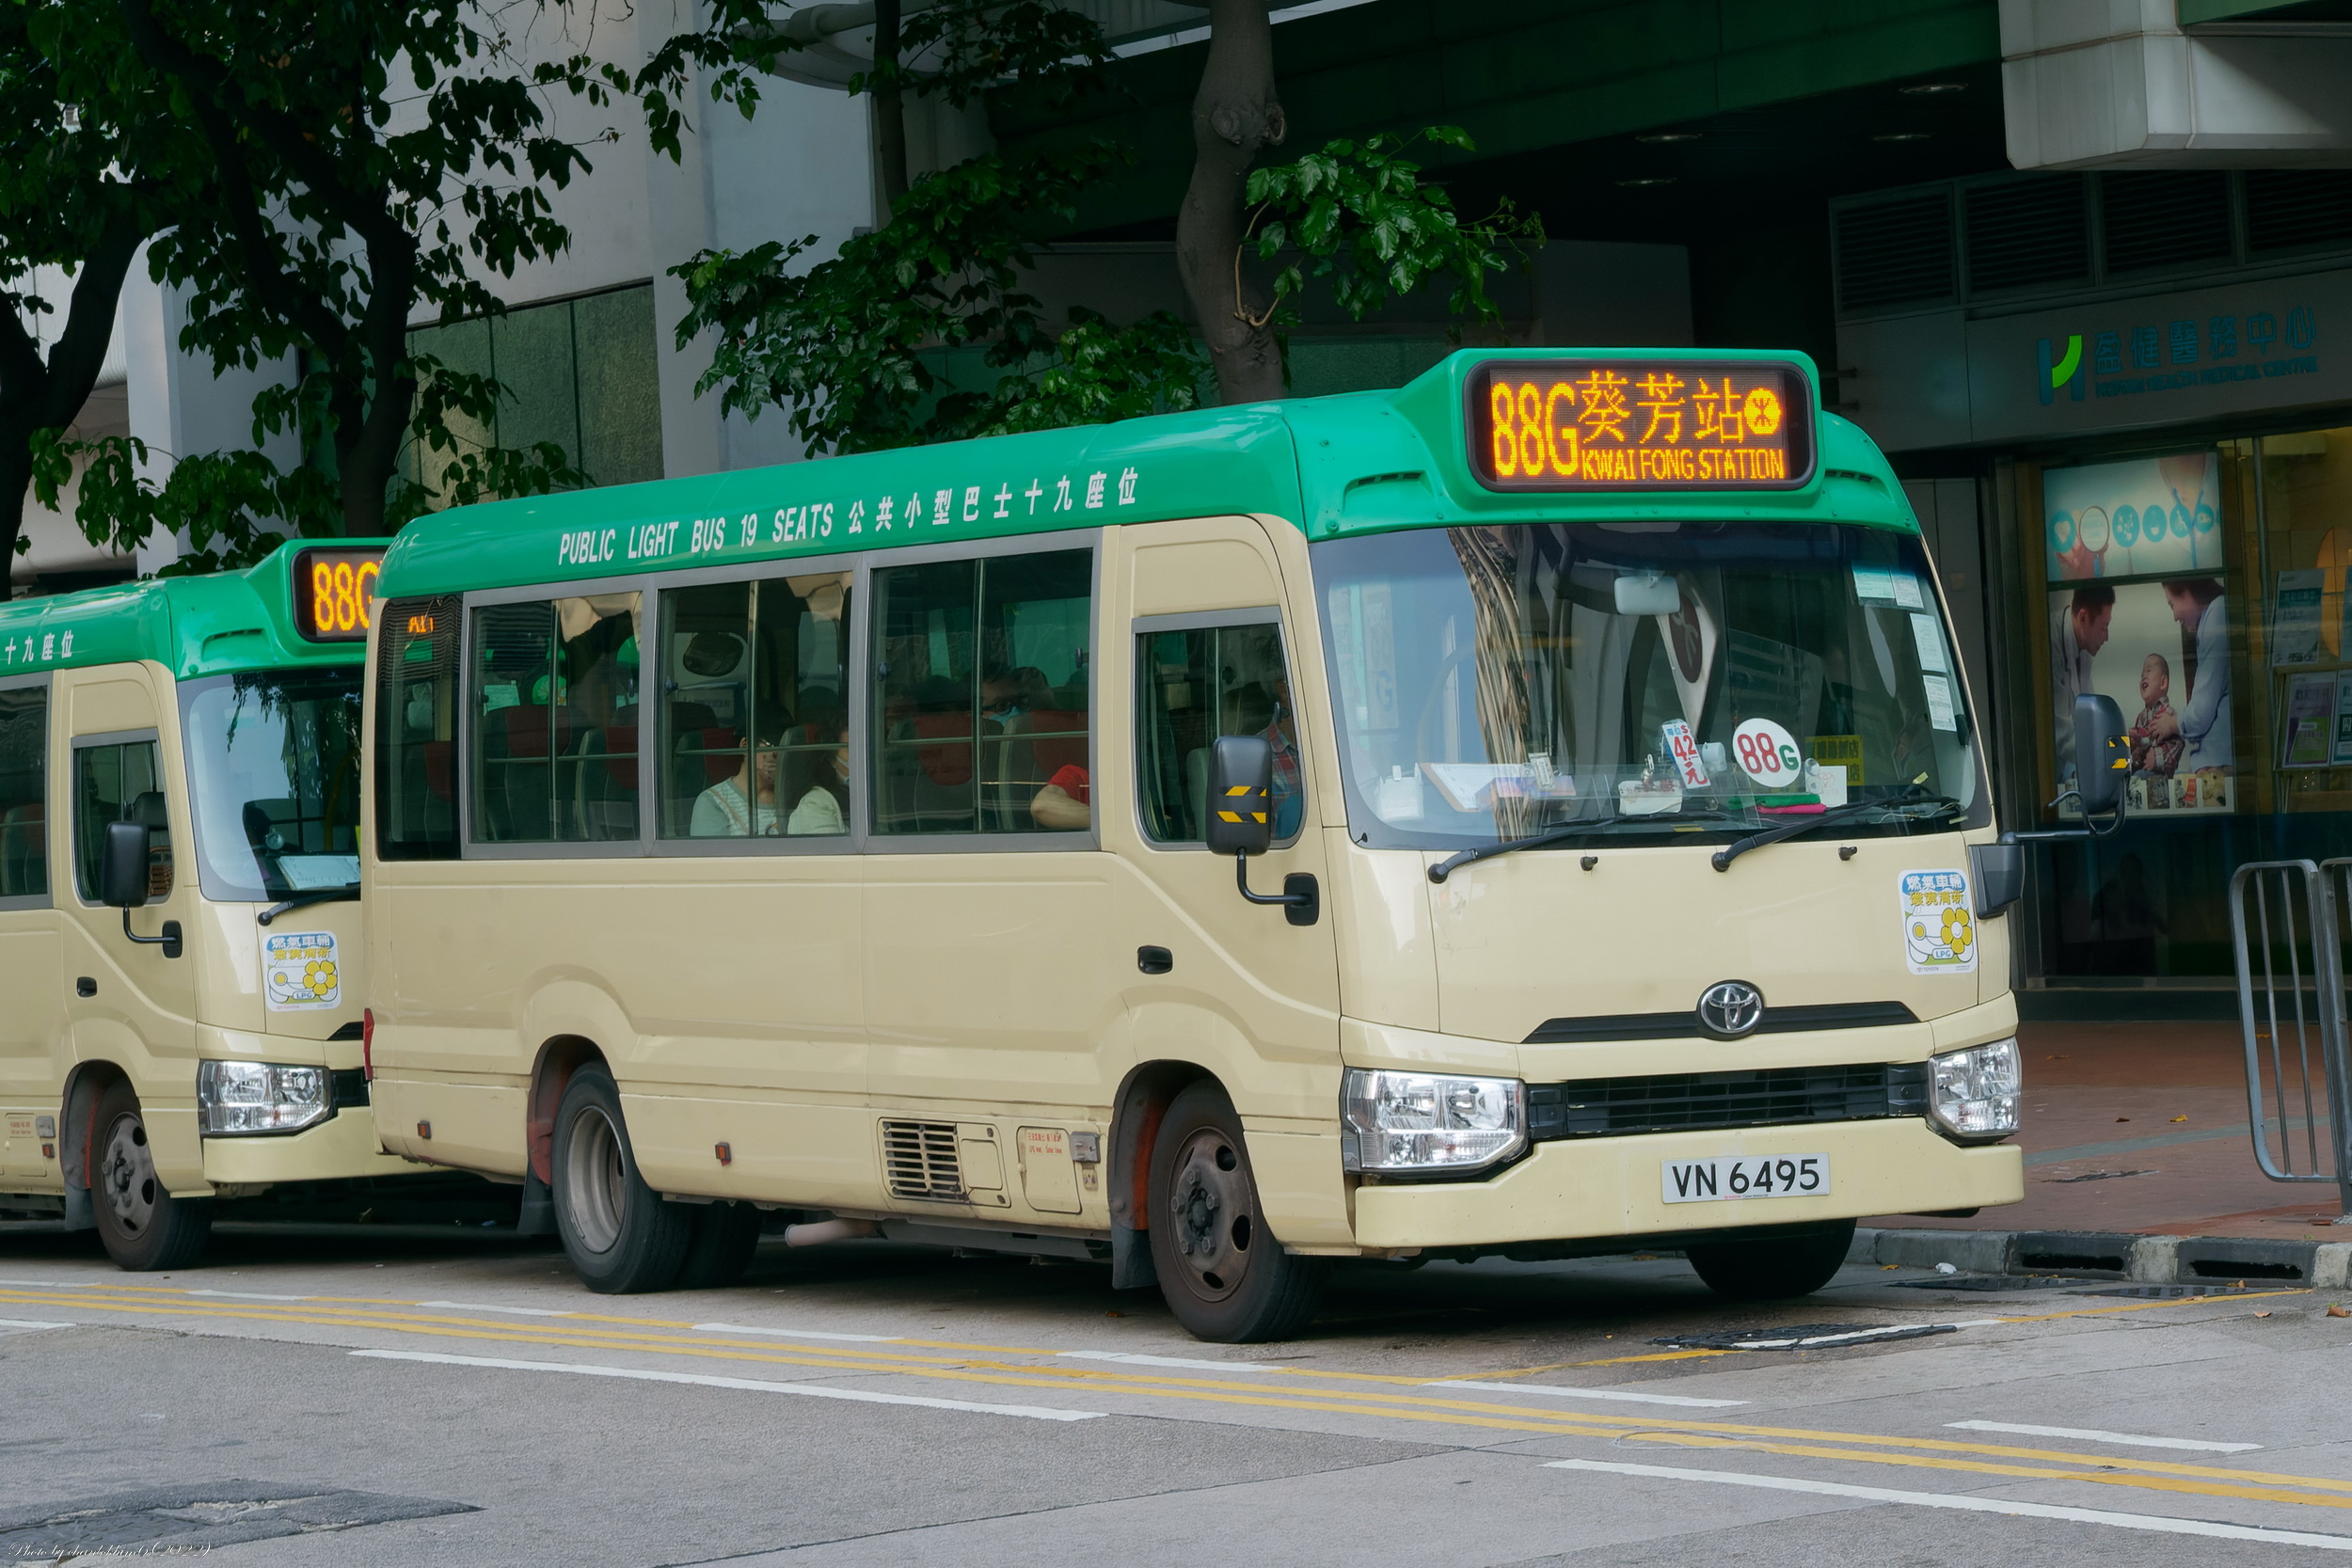 新界專綫小巴88G線| 香港巴士大典| Fandom